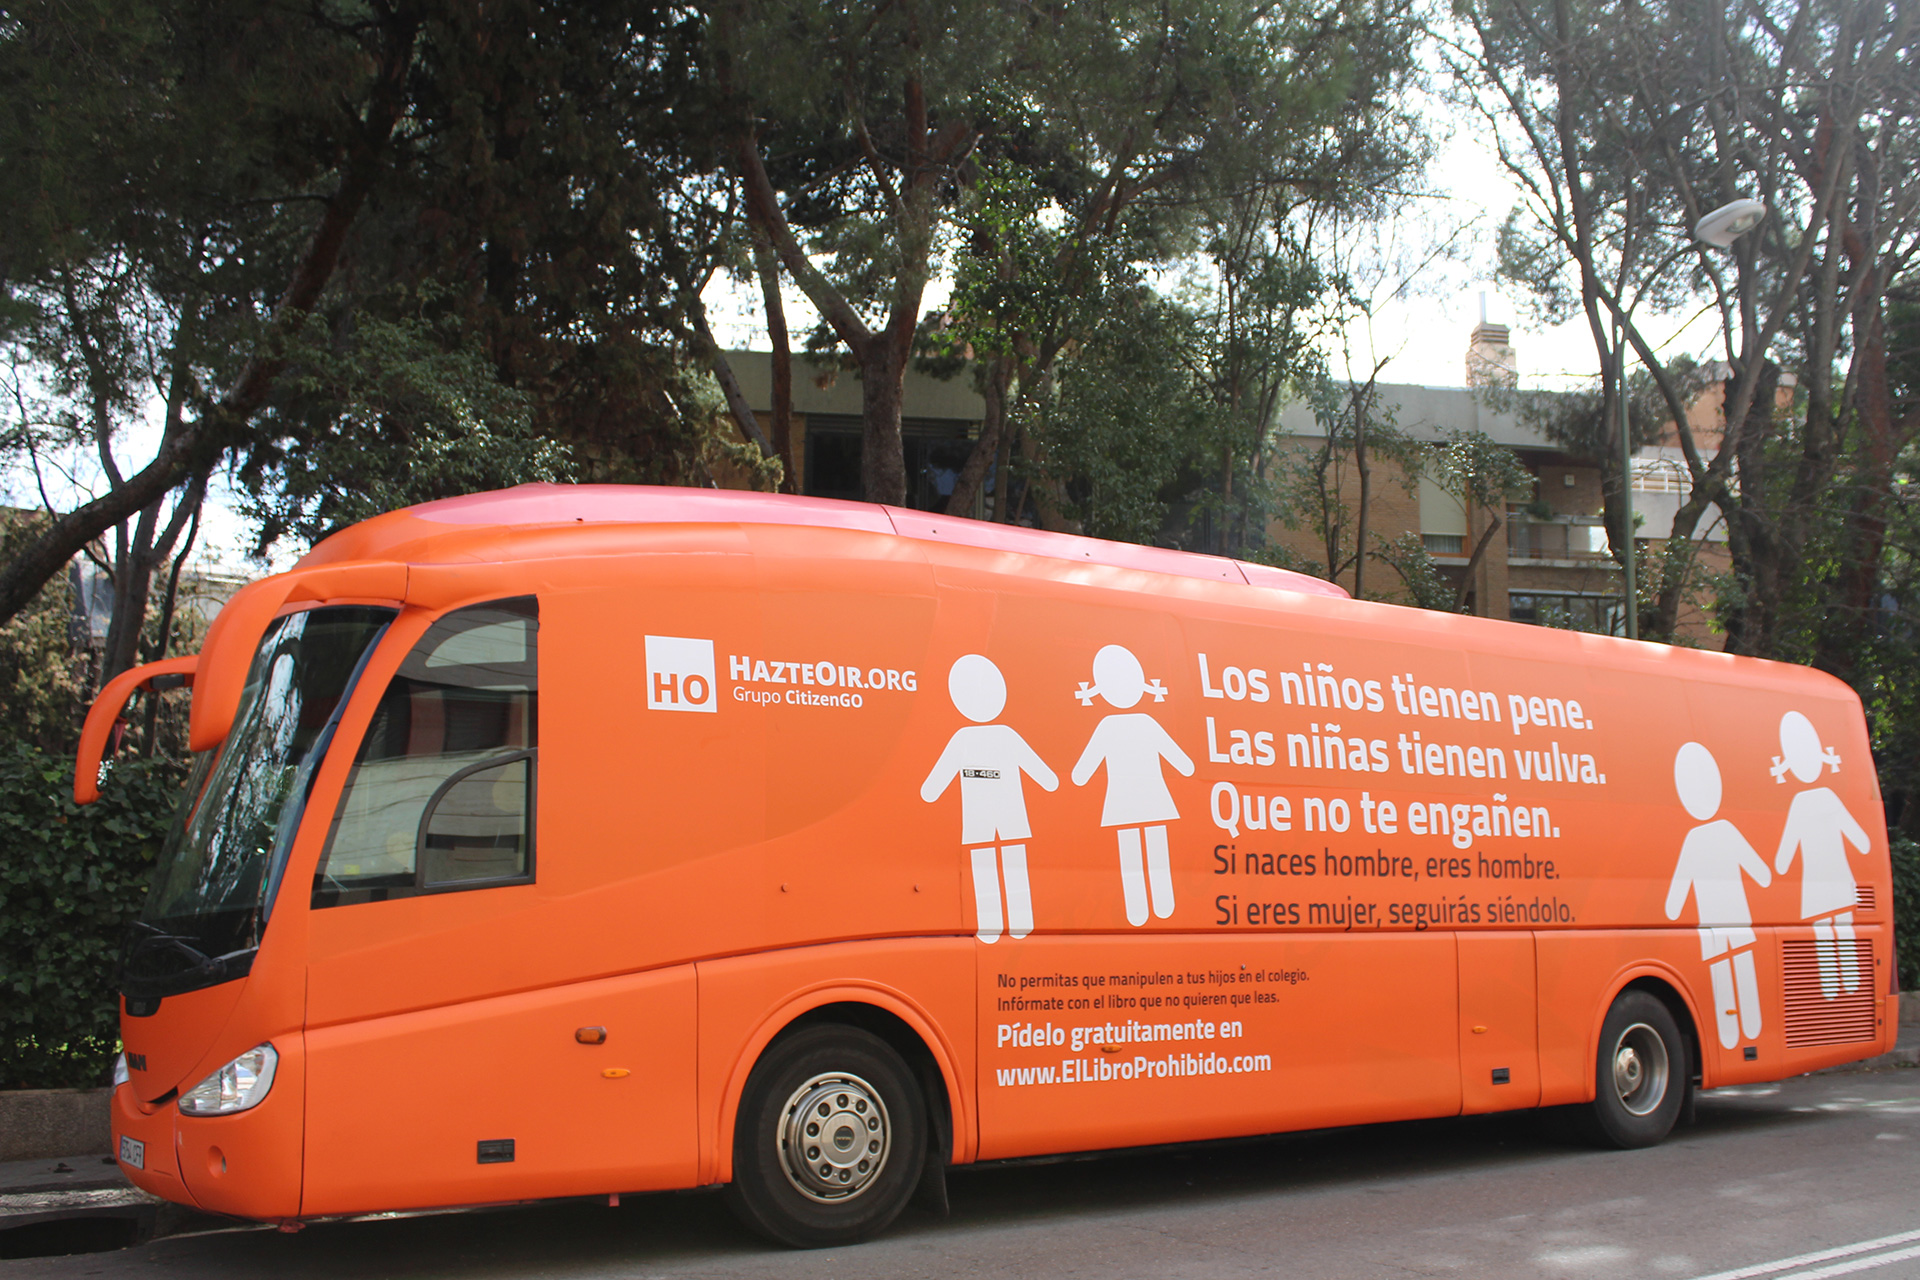 La policía de Madrid inmoviliza el autobús transfóbico